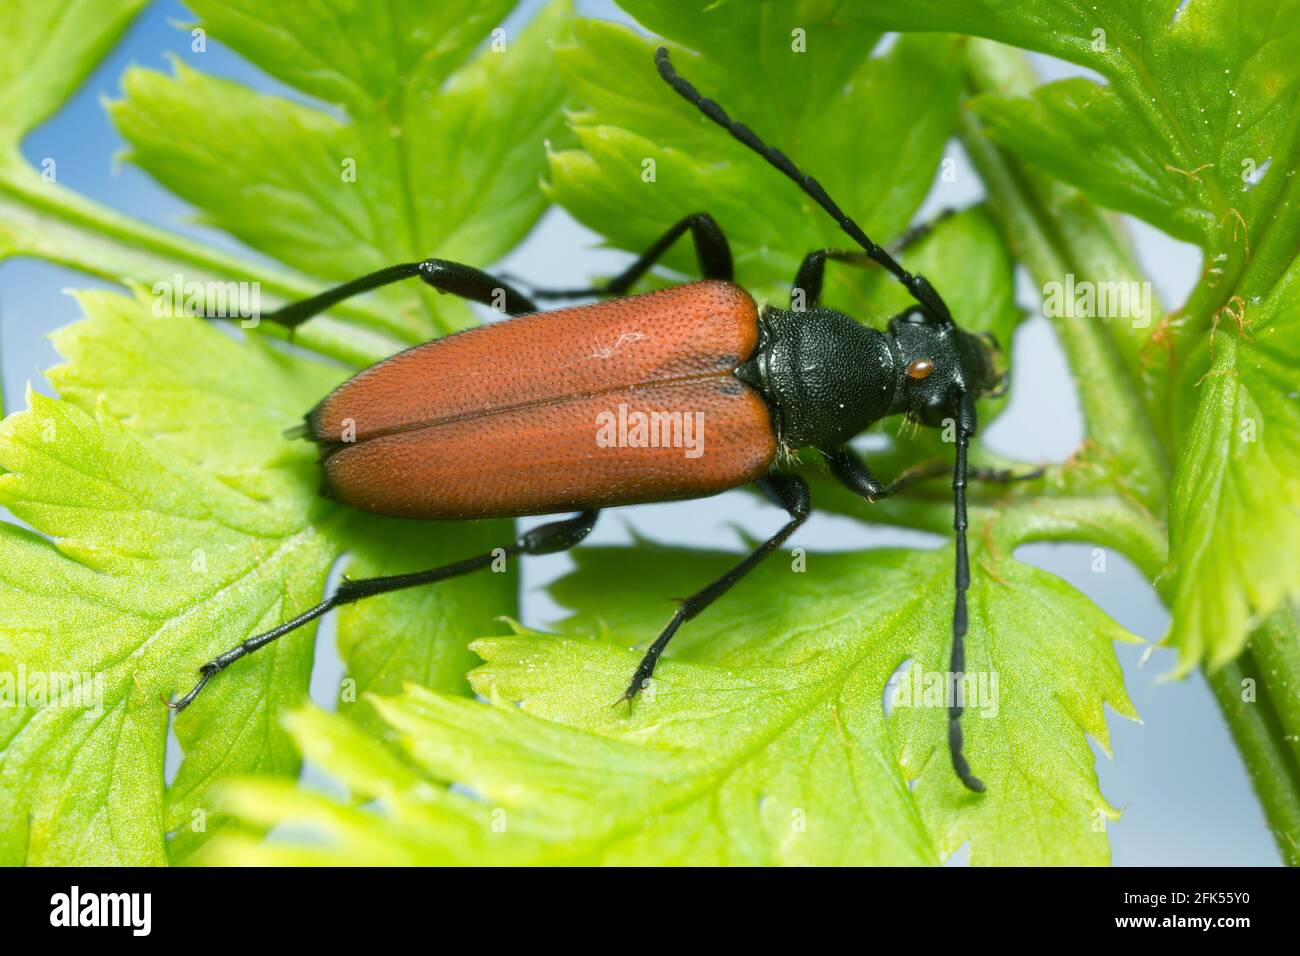 Female flower longhorn beetle, Anastrangalia sanguinolenta on leaf Stock Photo